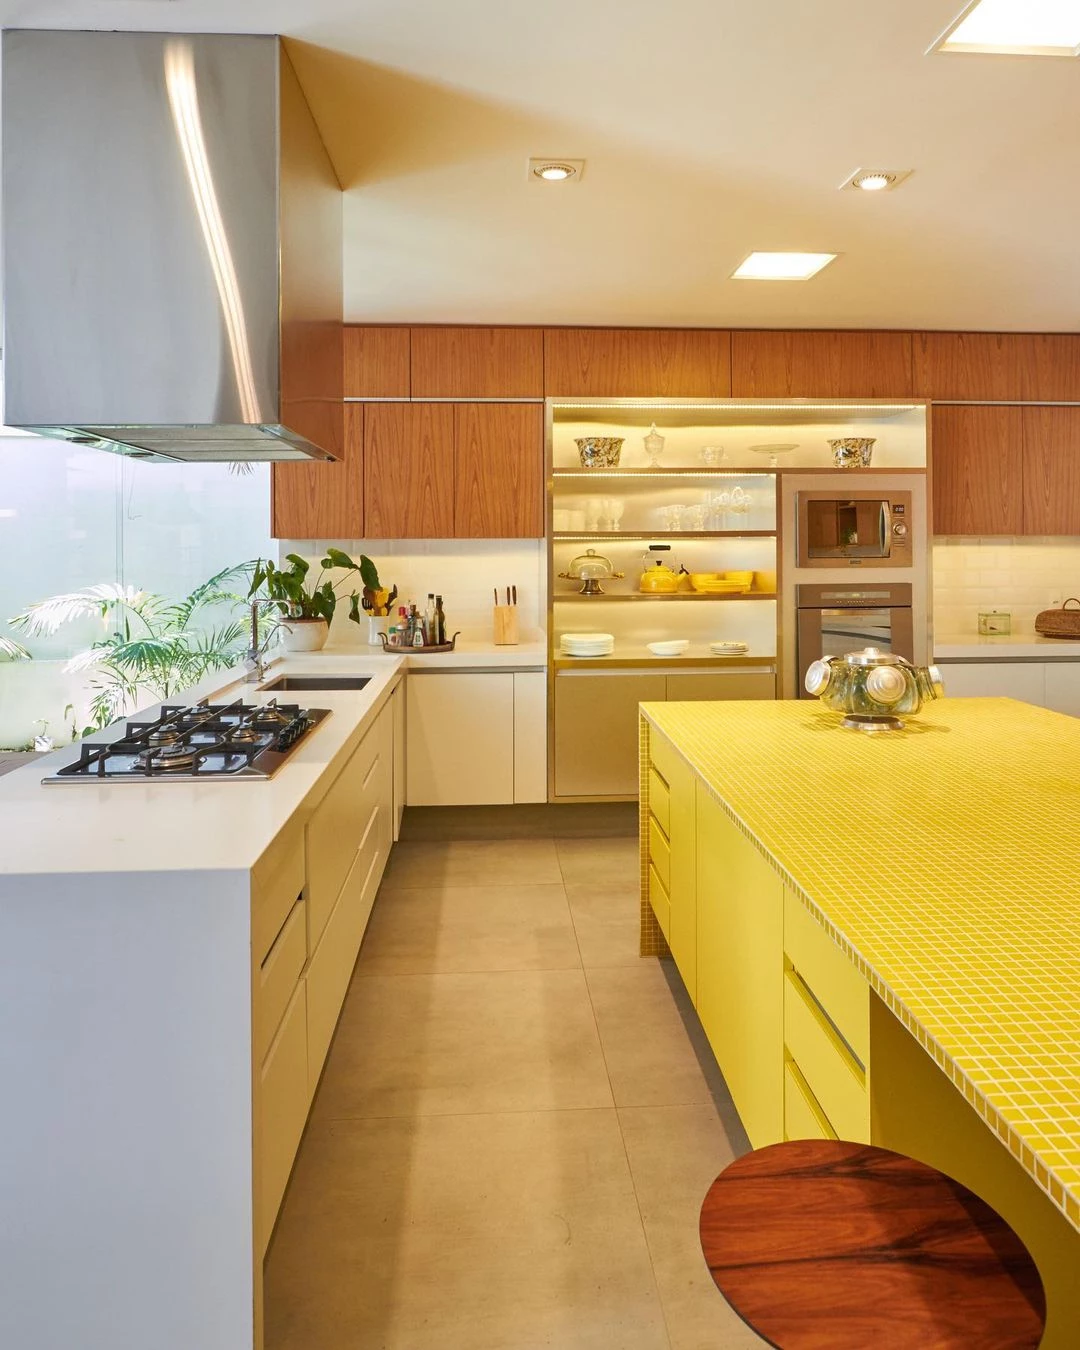 Foto de cozinha amarela 035 - 6